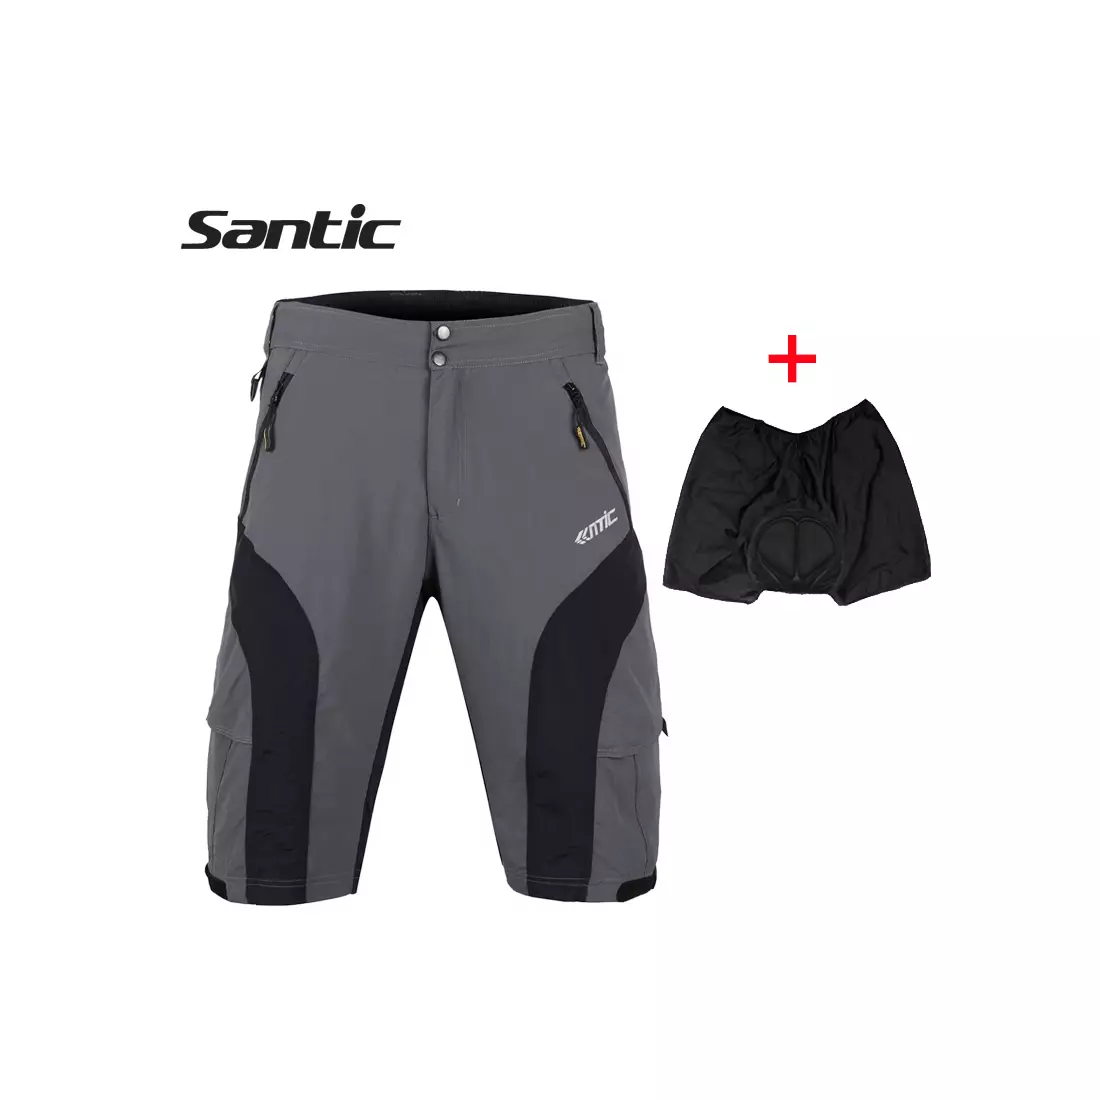 SANTIC men's cycling shorts black and gray